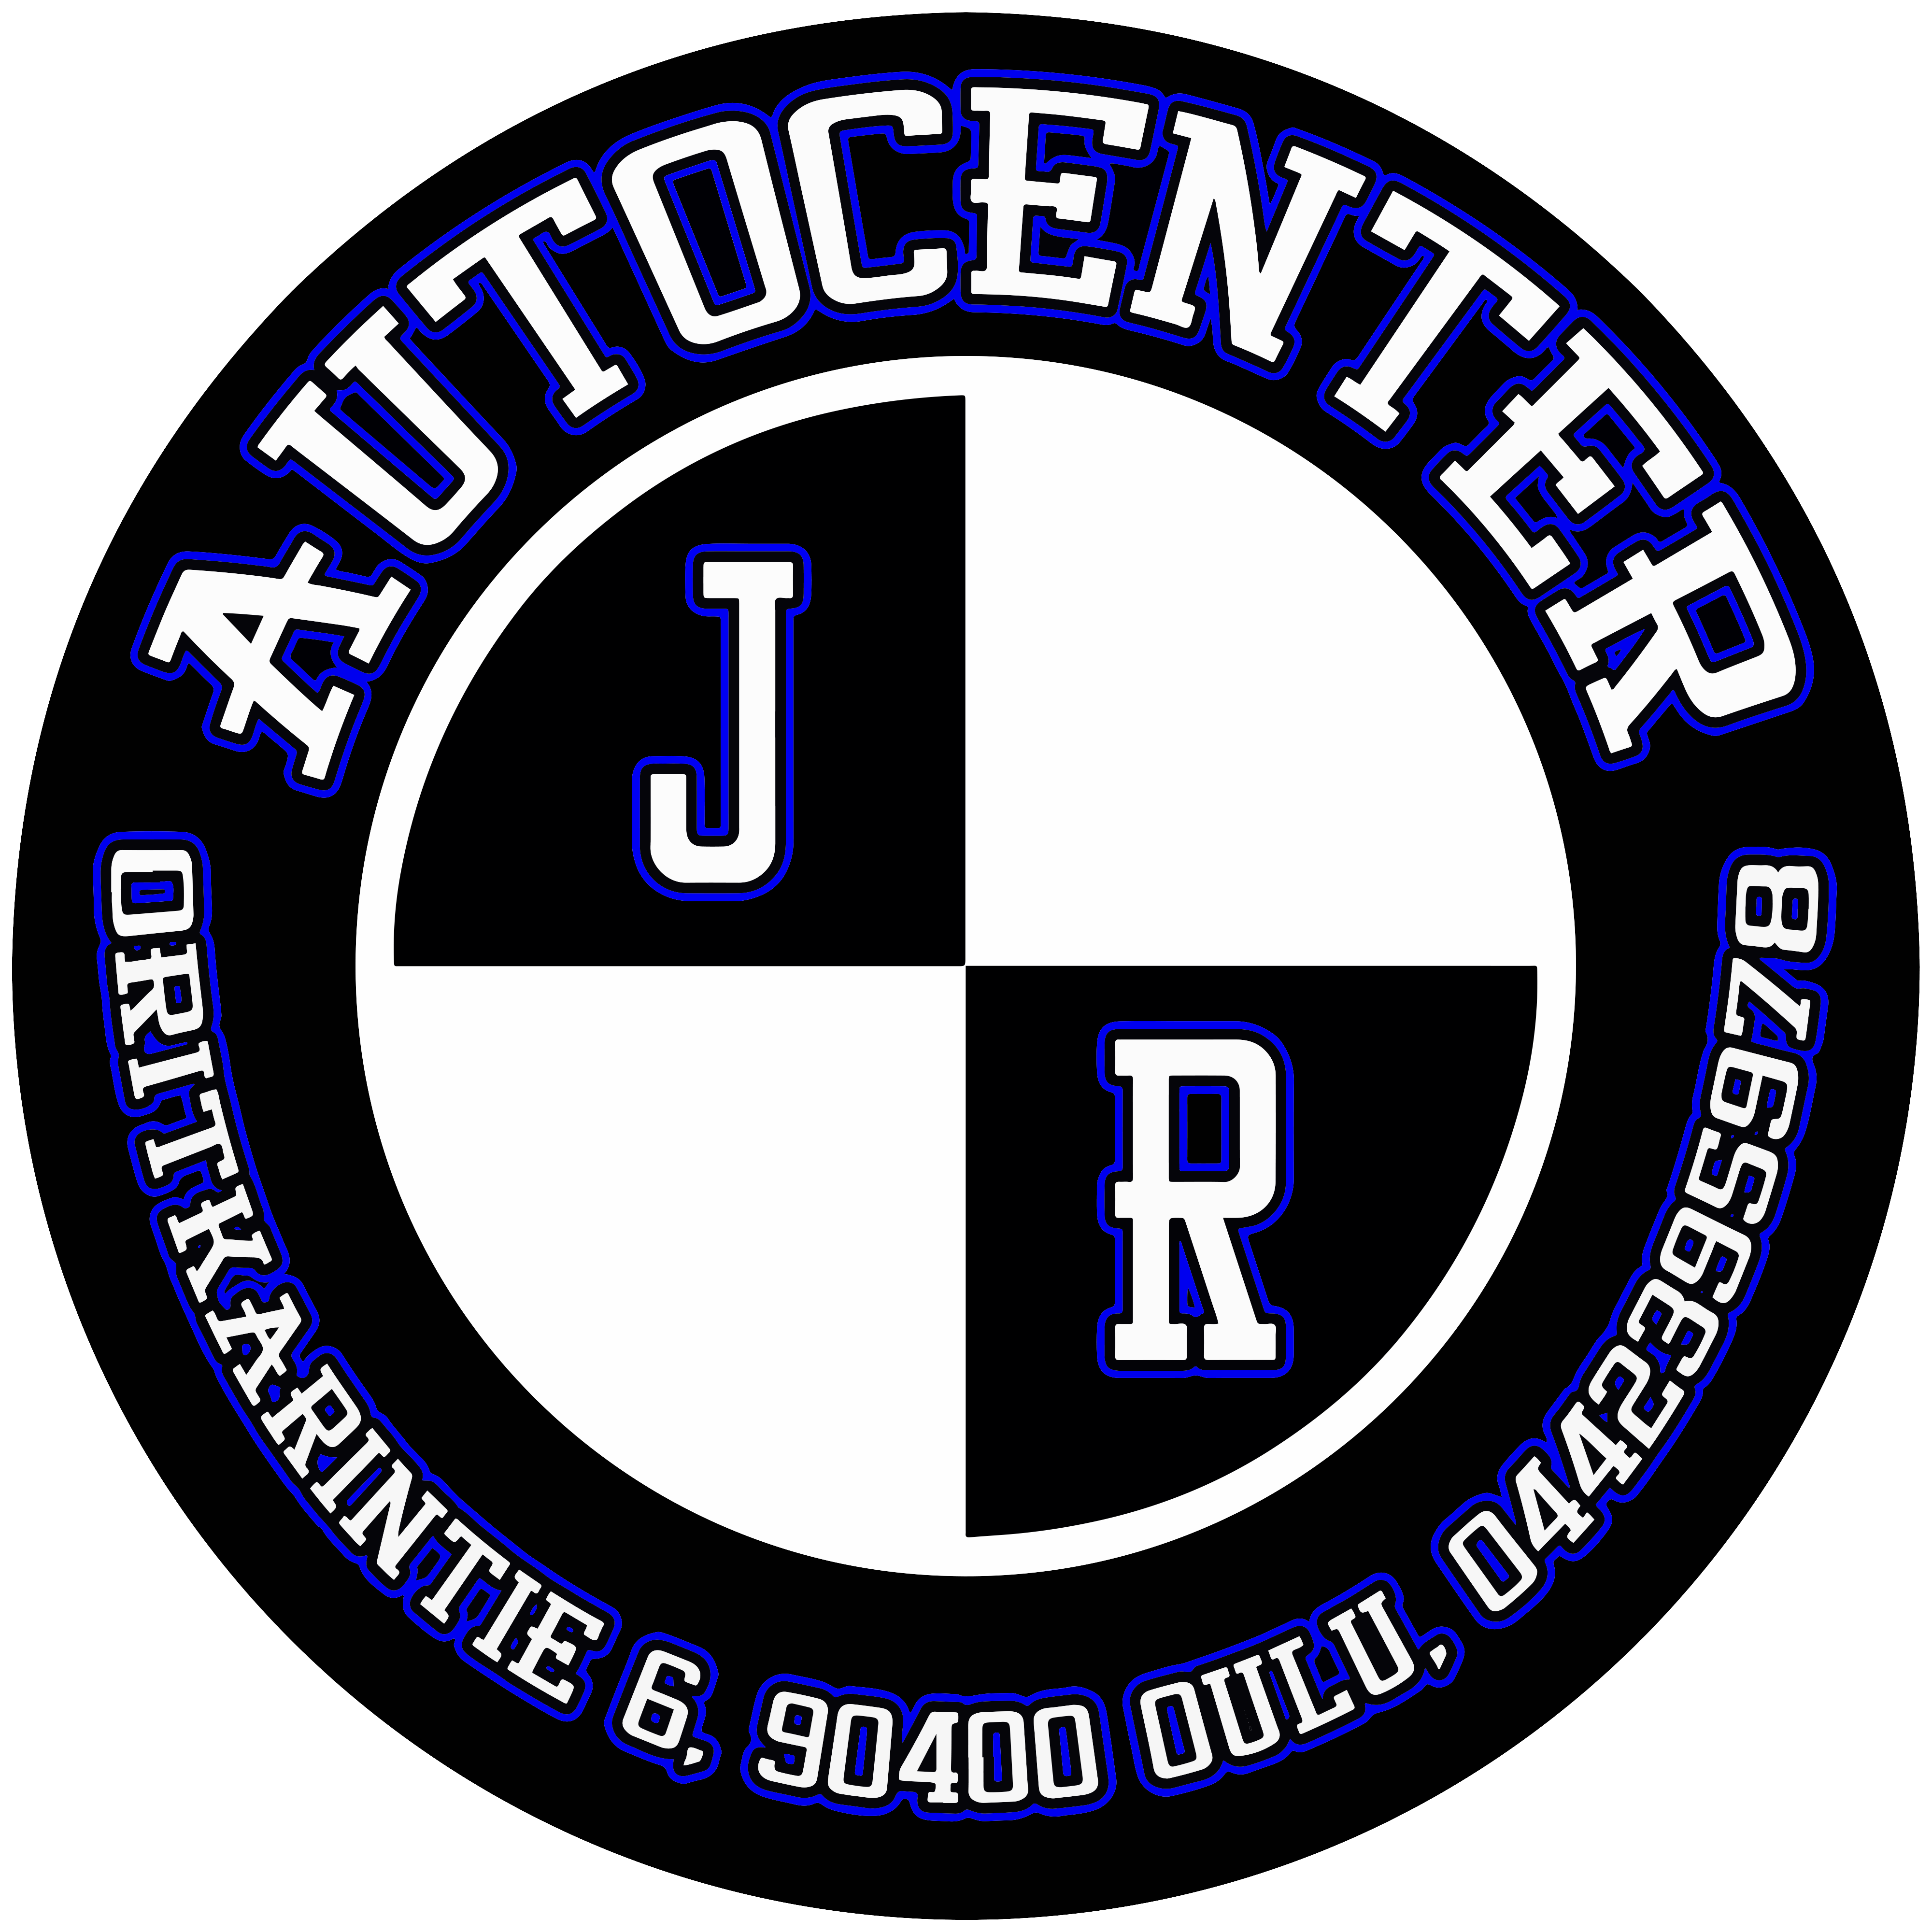 JR Autocenter Oy